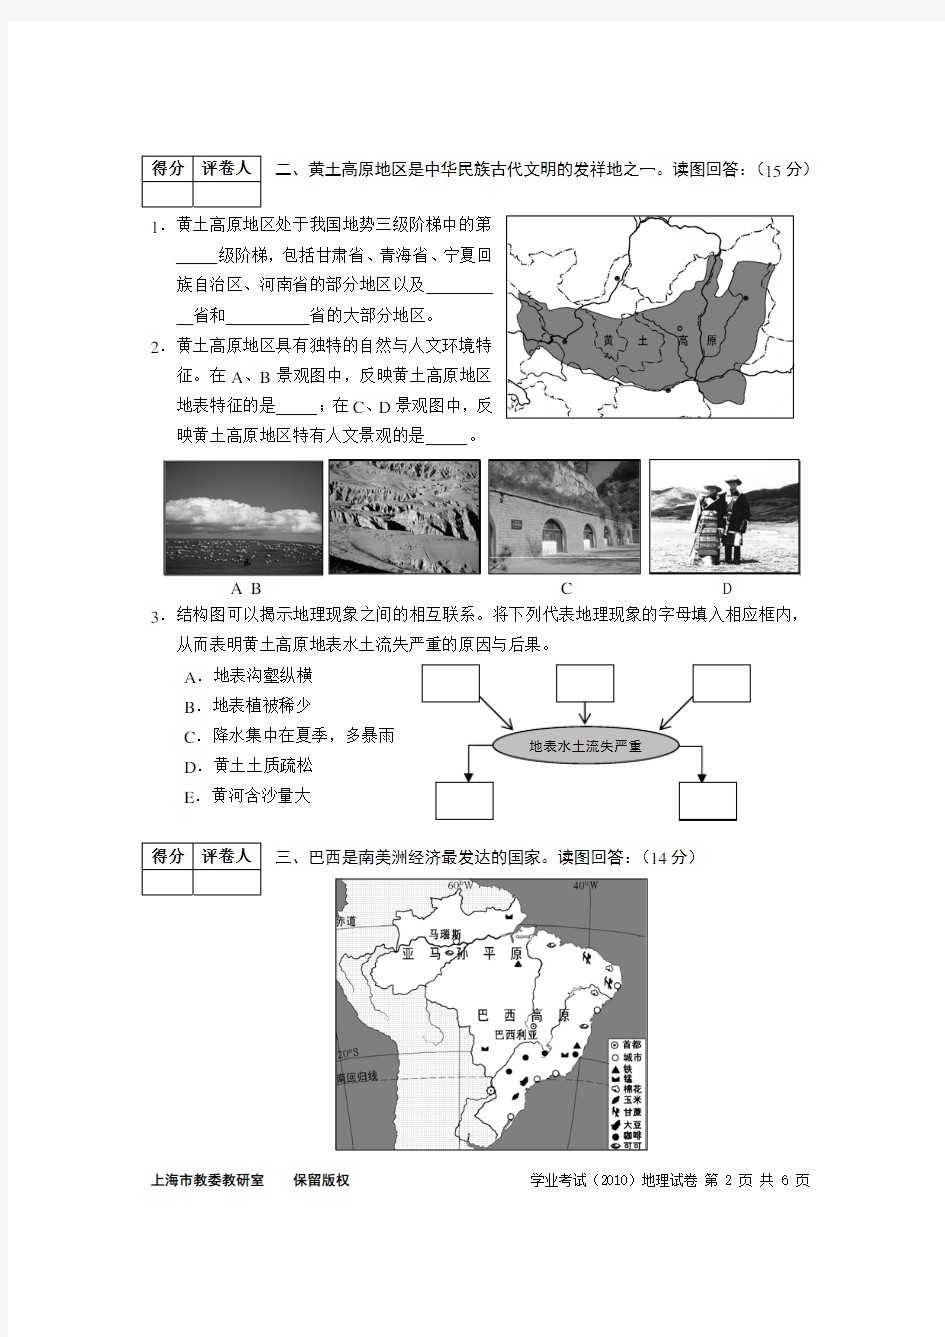 2010年上海市初中地理学业考试试卷 - 含答案